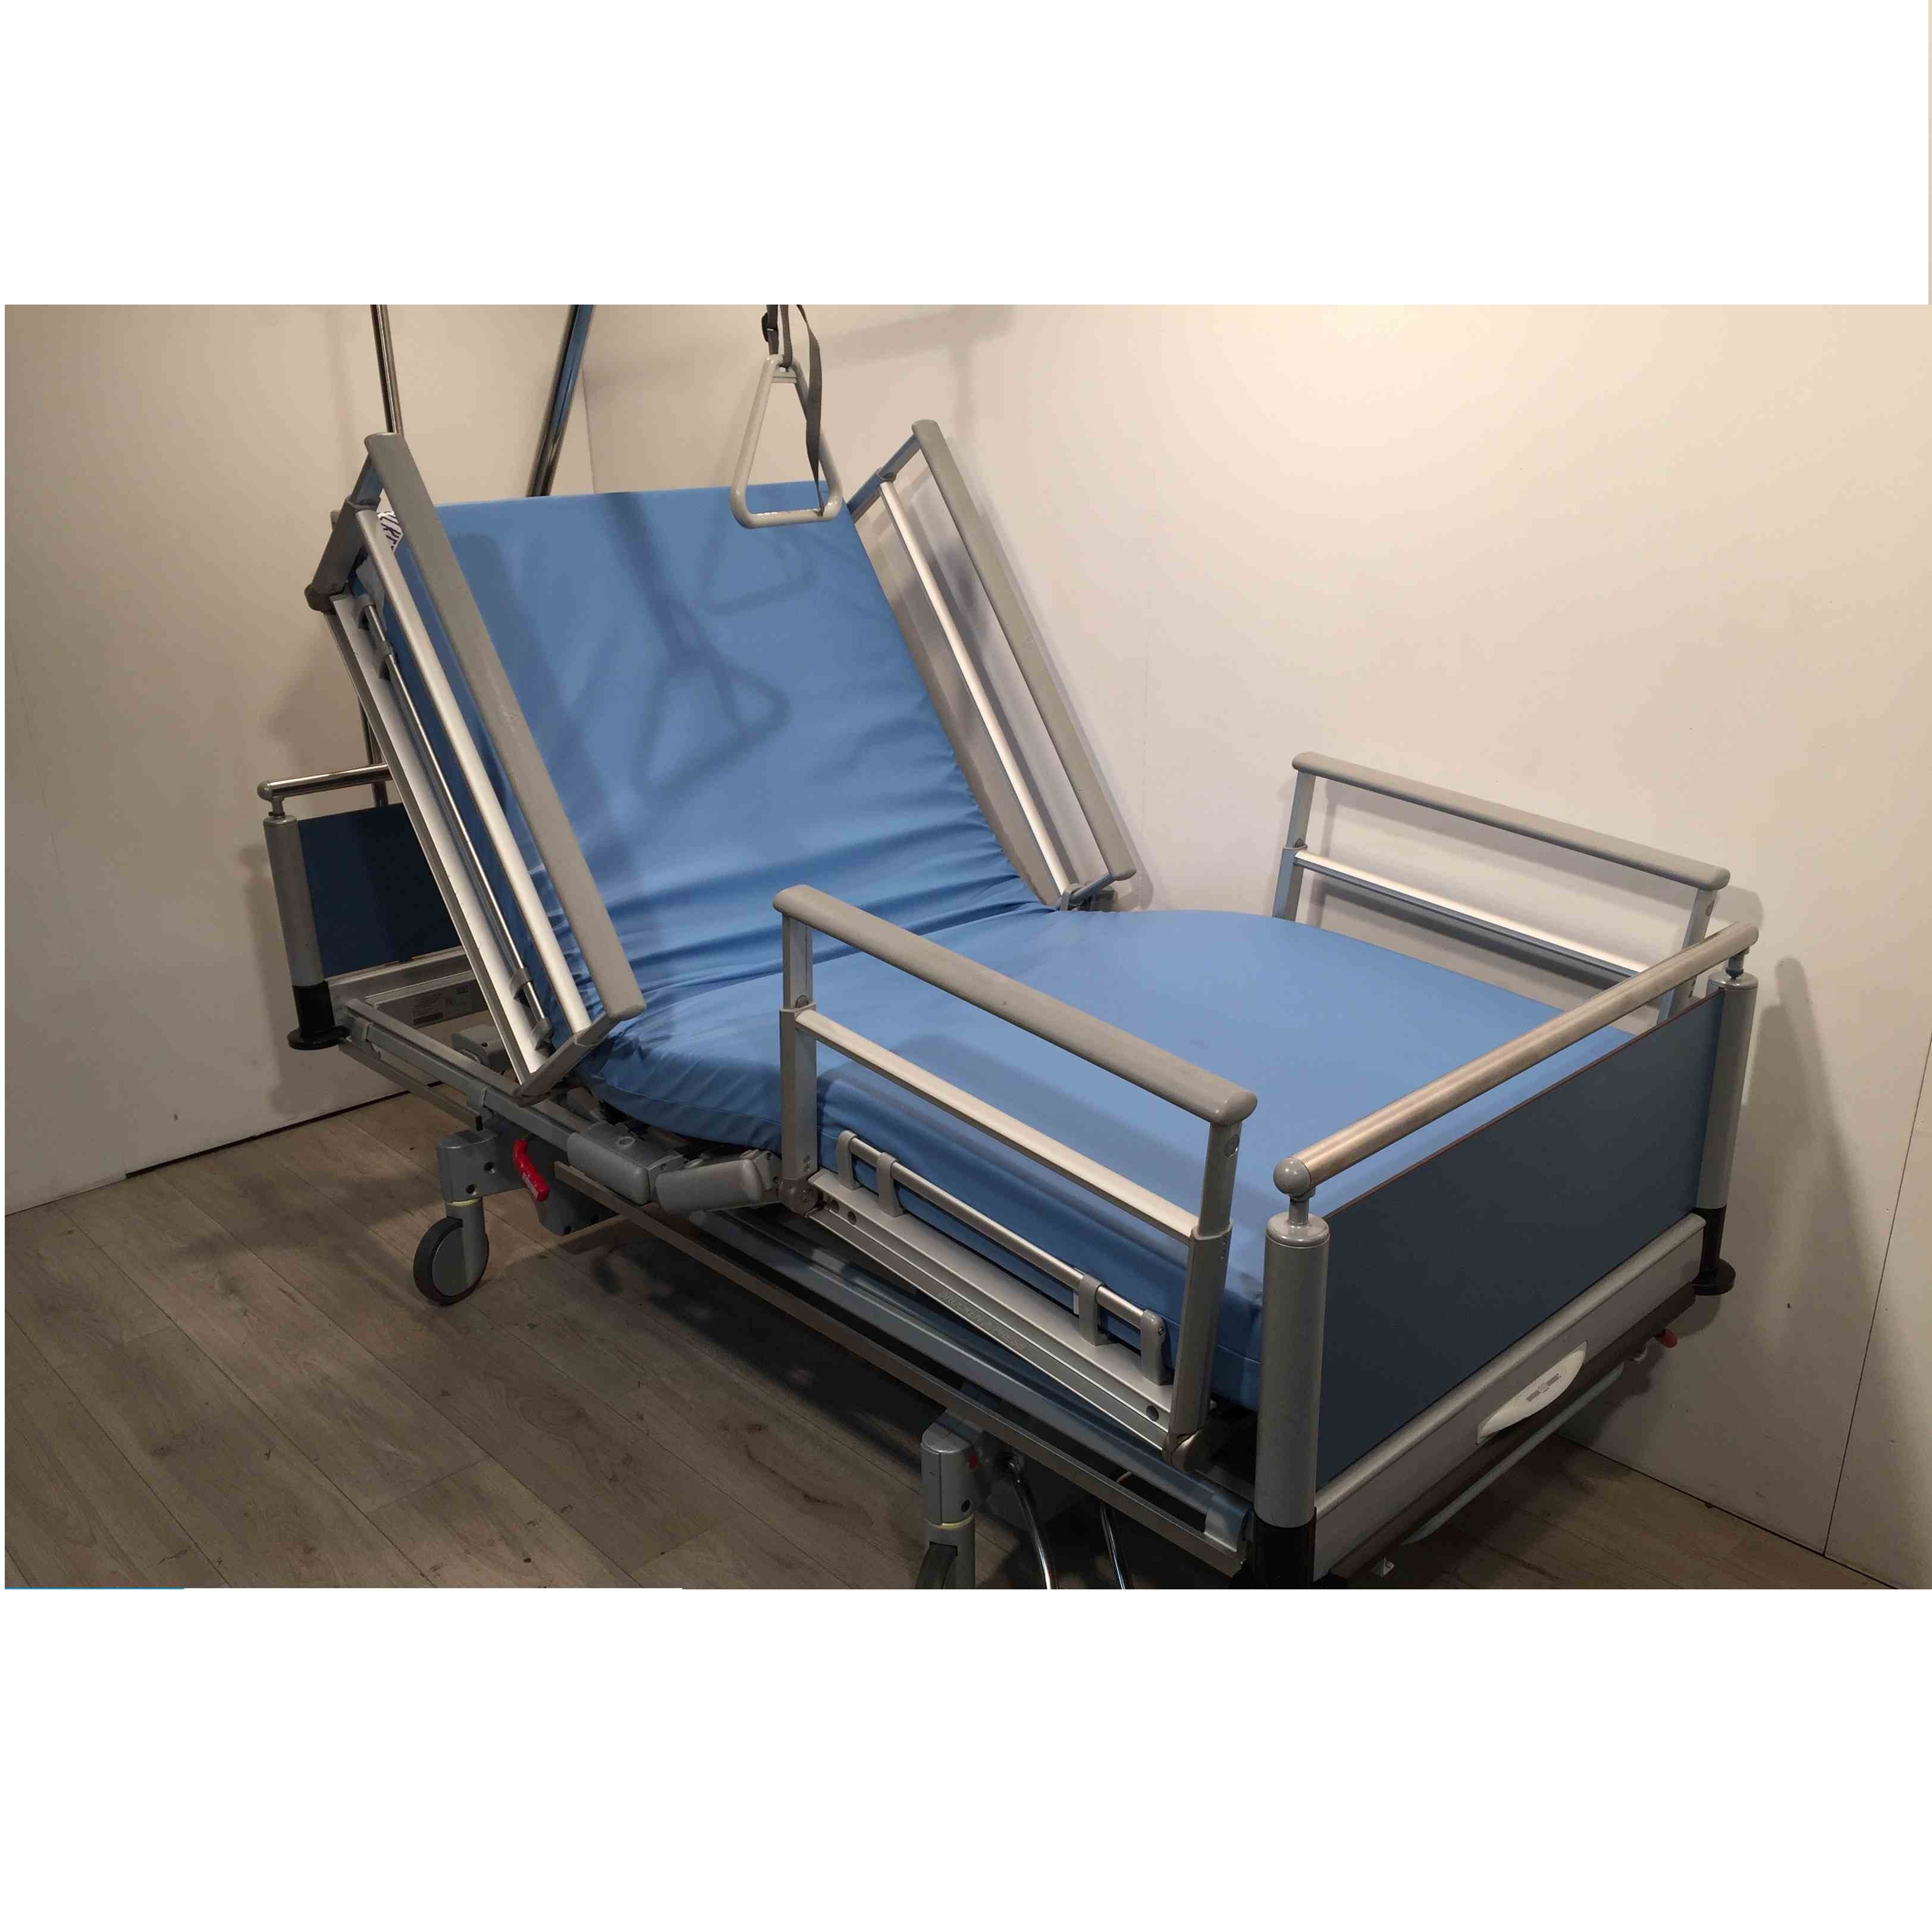 Łóżka rehabilitacyjne szpitalne używane B/D Arestomed używane